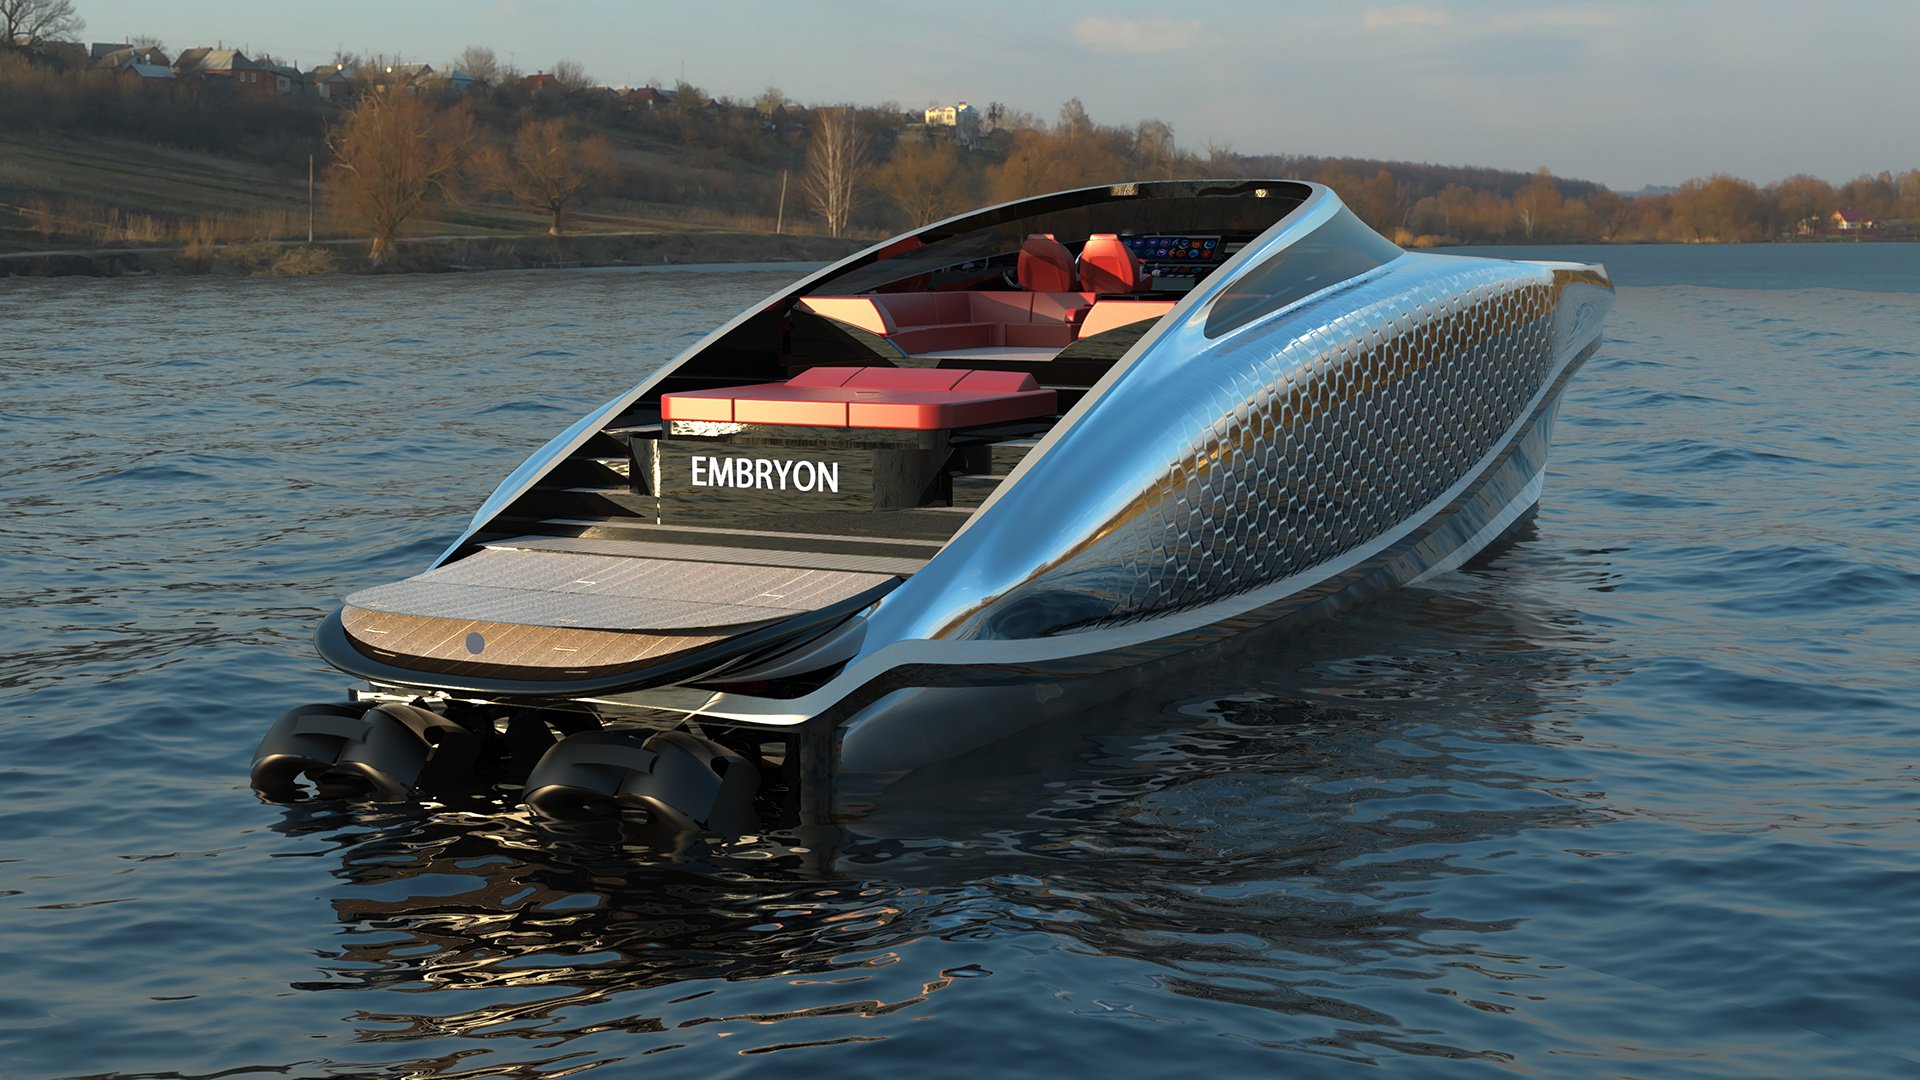 imagen 3 de Embryon Hyperboat Concept, una nueva joya náutica de Lazzarini.